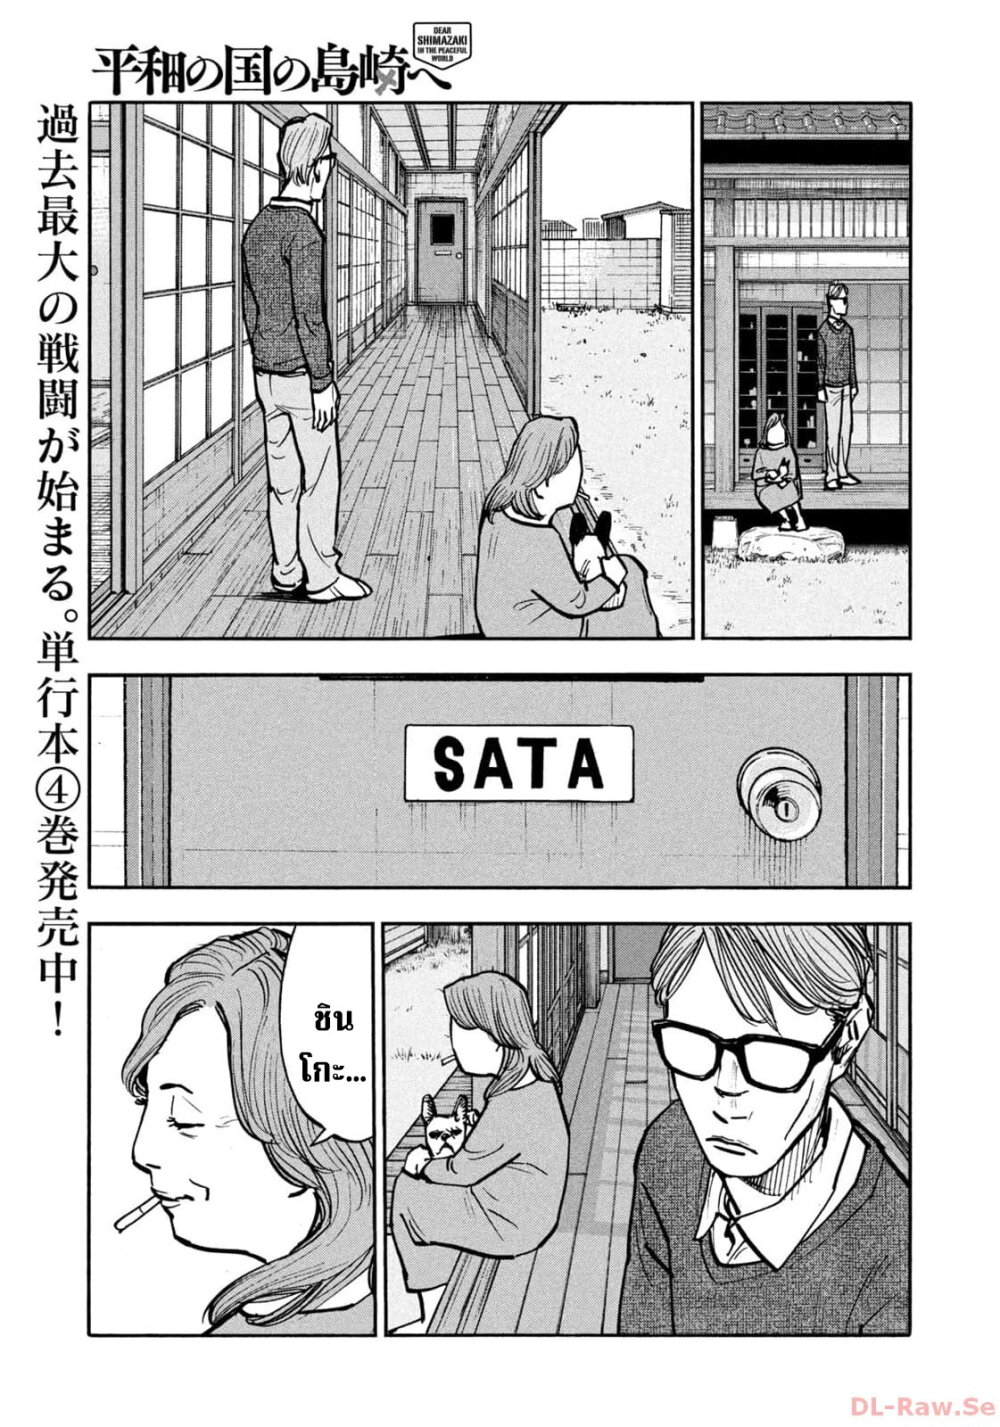 อ่านมังงะ Heiwa no Kuni no Shimazaki e ตอนที่ 51/4.jpg